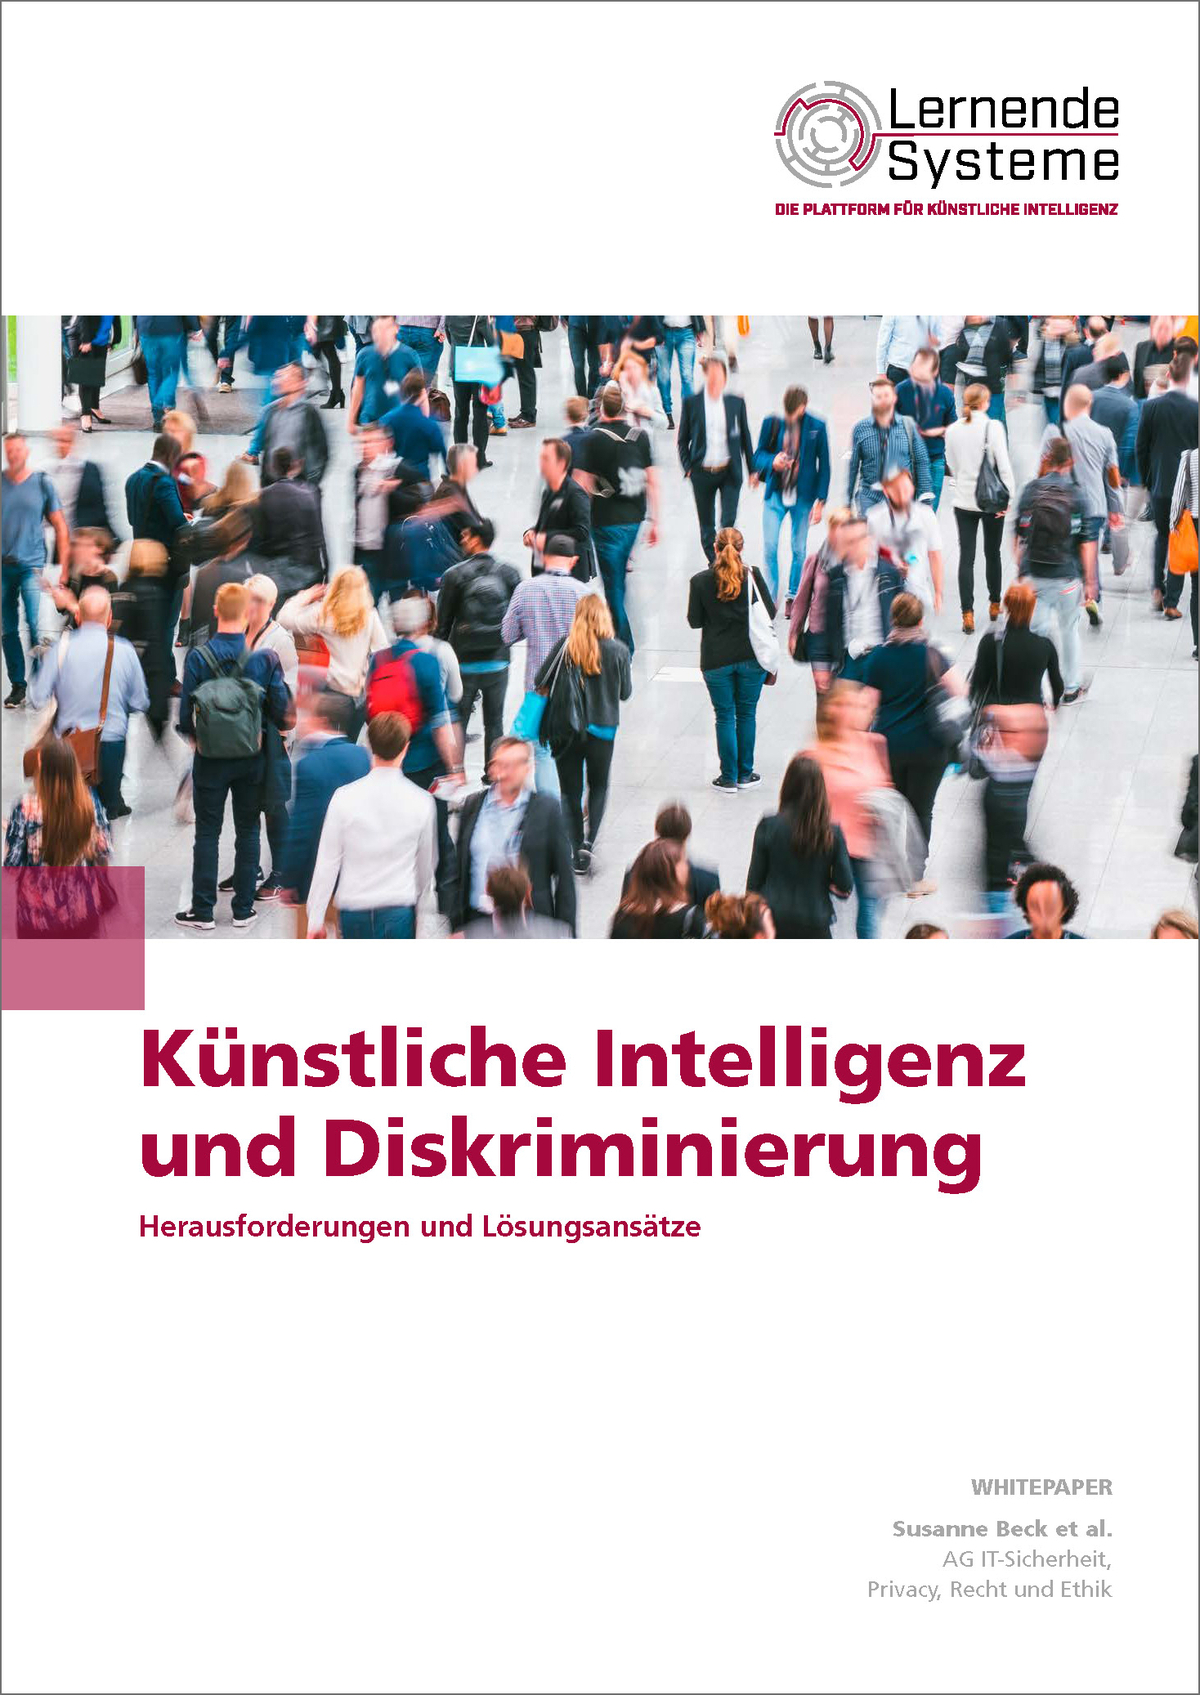 Whitepaper "Künstliche Intelligenz und Diskriminierung – Herausforderungen und Lösungsansätze"